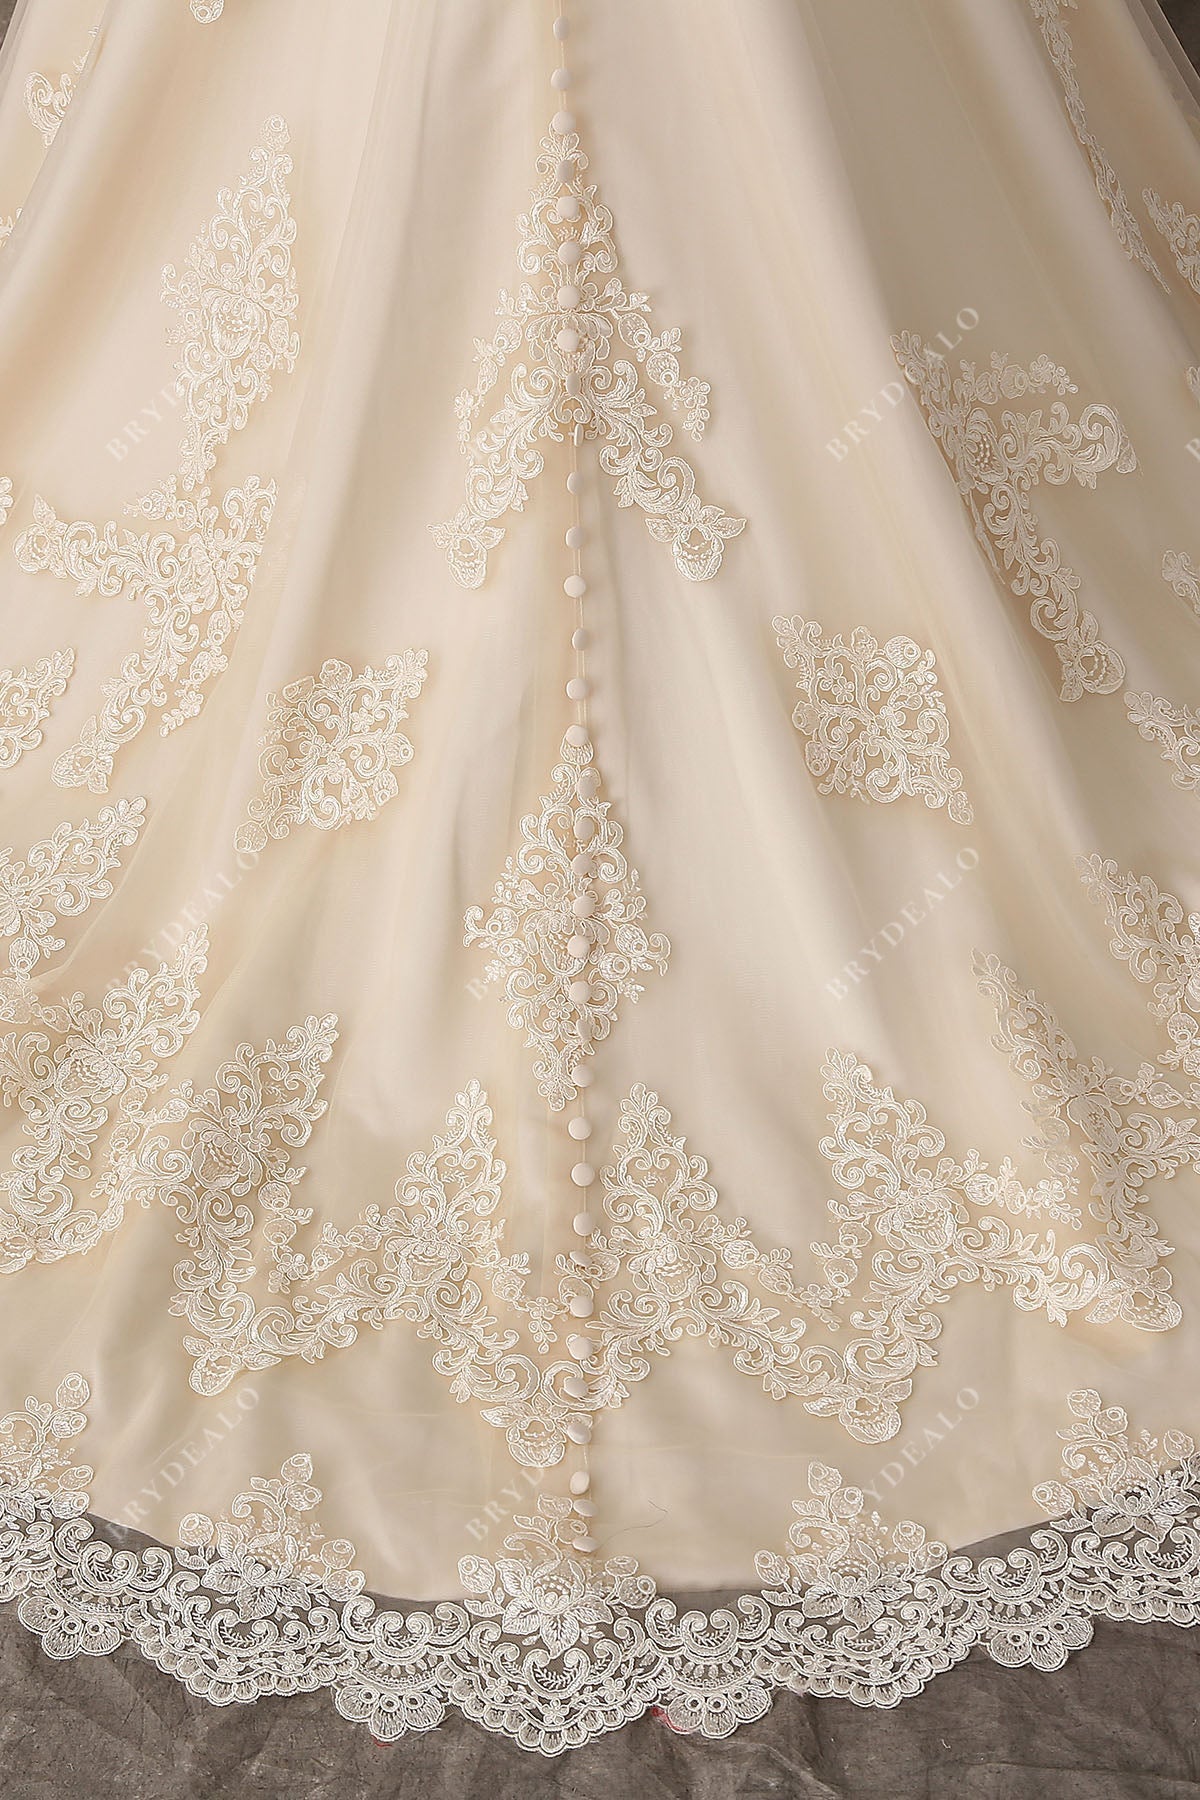 scalloped lace long train wedding dress